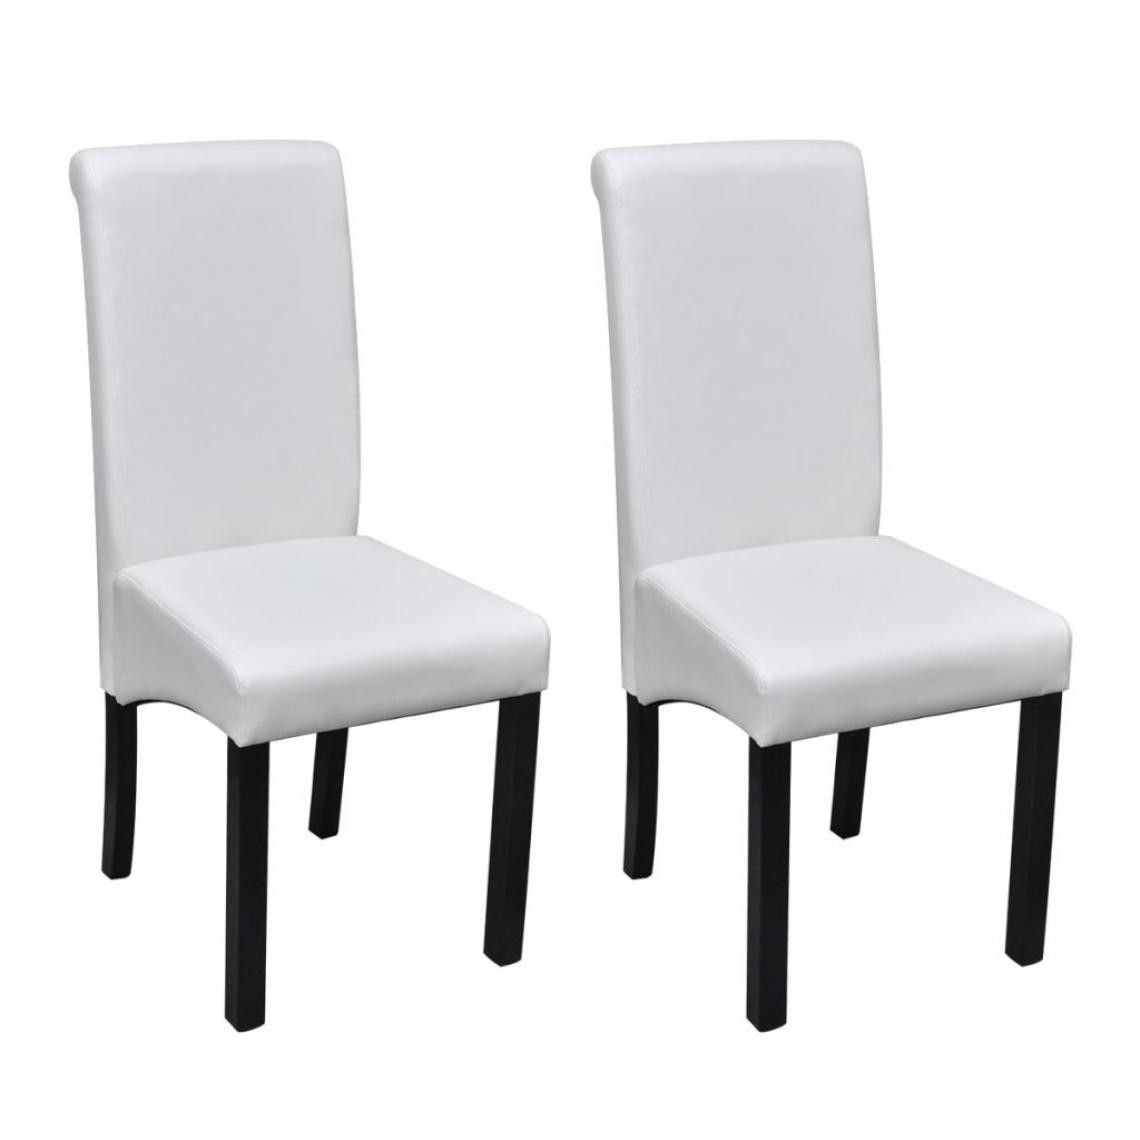 Decoshop26 - Lot de 2 chaises de salle à manger cuisine design moderne similicuir blanc CDS020184 - Chaises